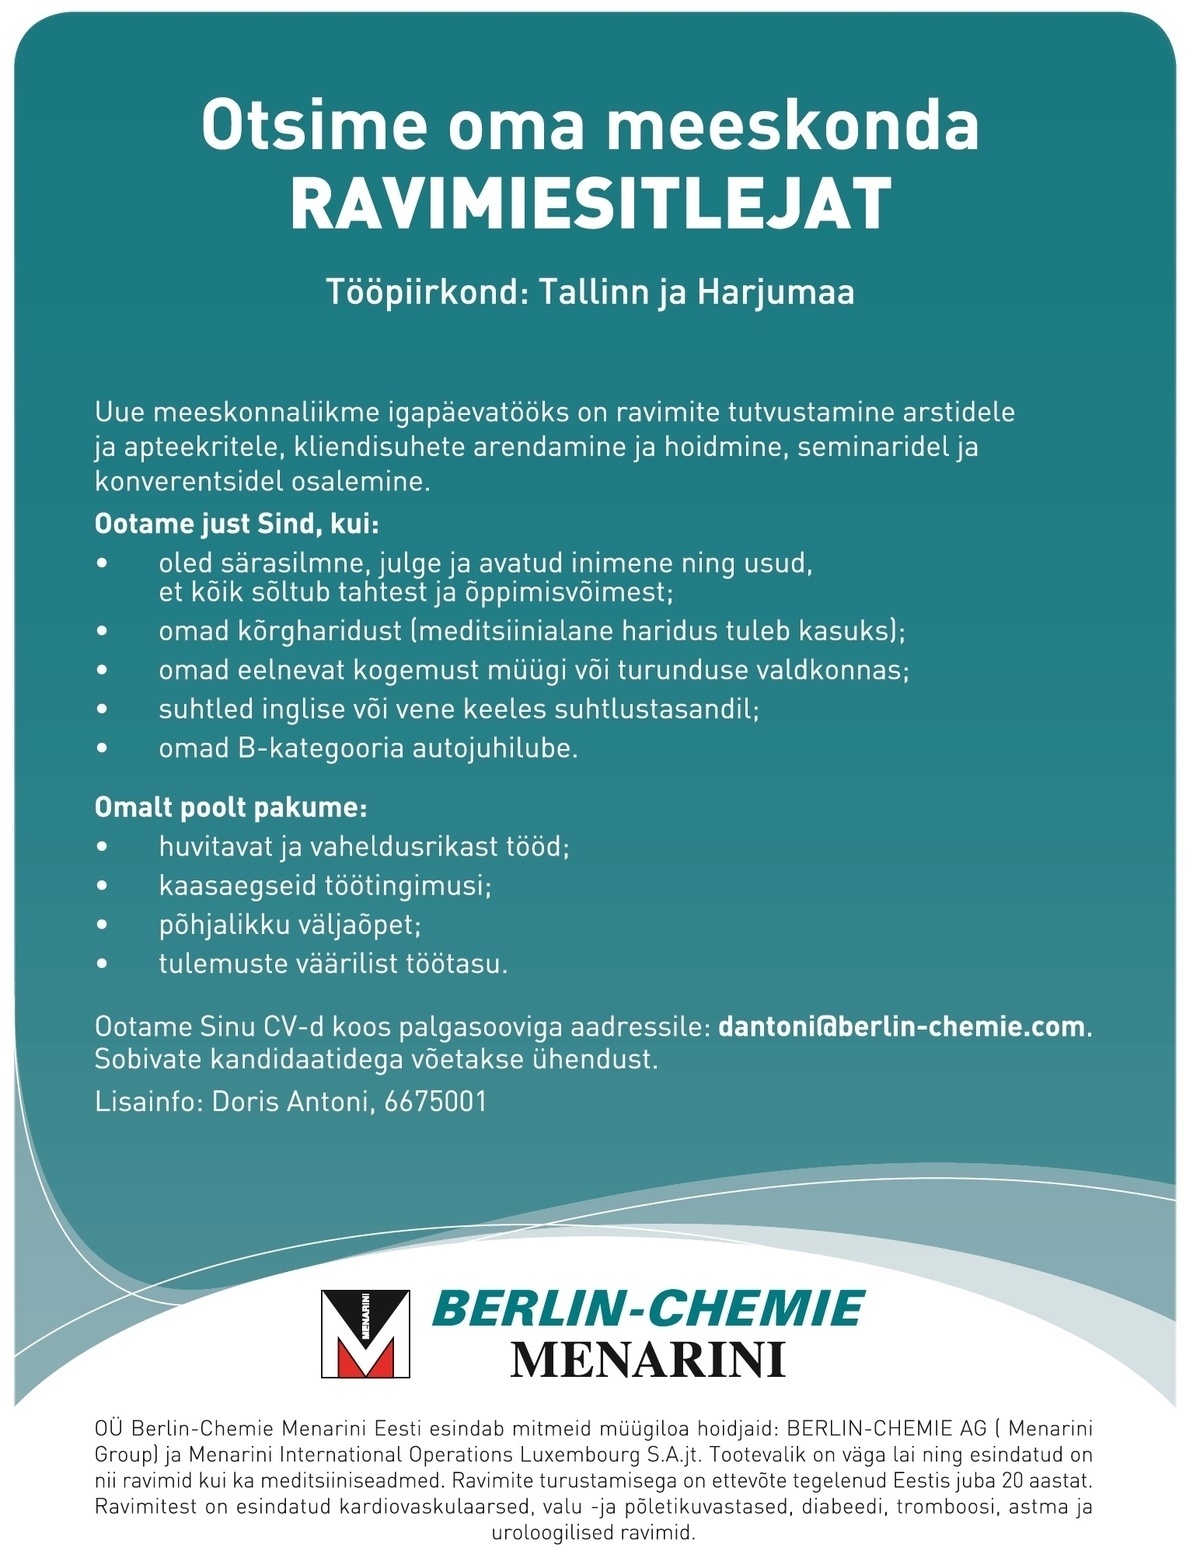 Berlin-Chemie Menarini Eesti OÜ Ravimiesitleja (Tallinn, Harjumaa)